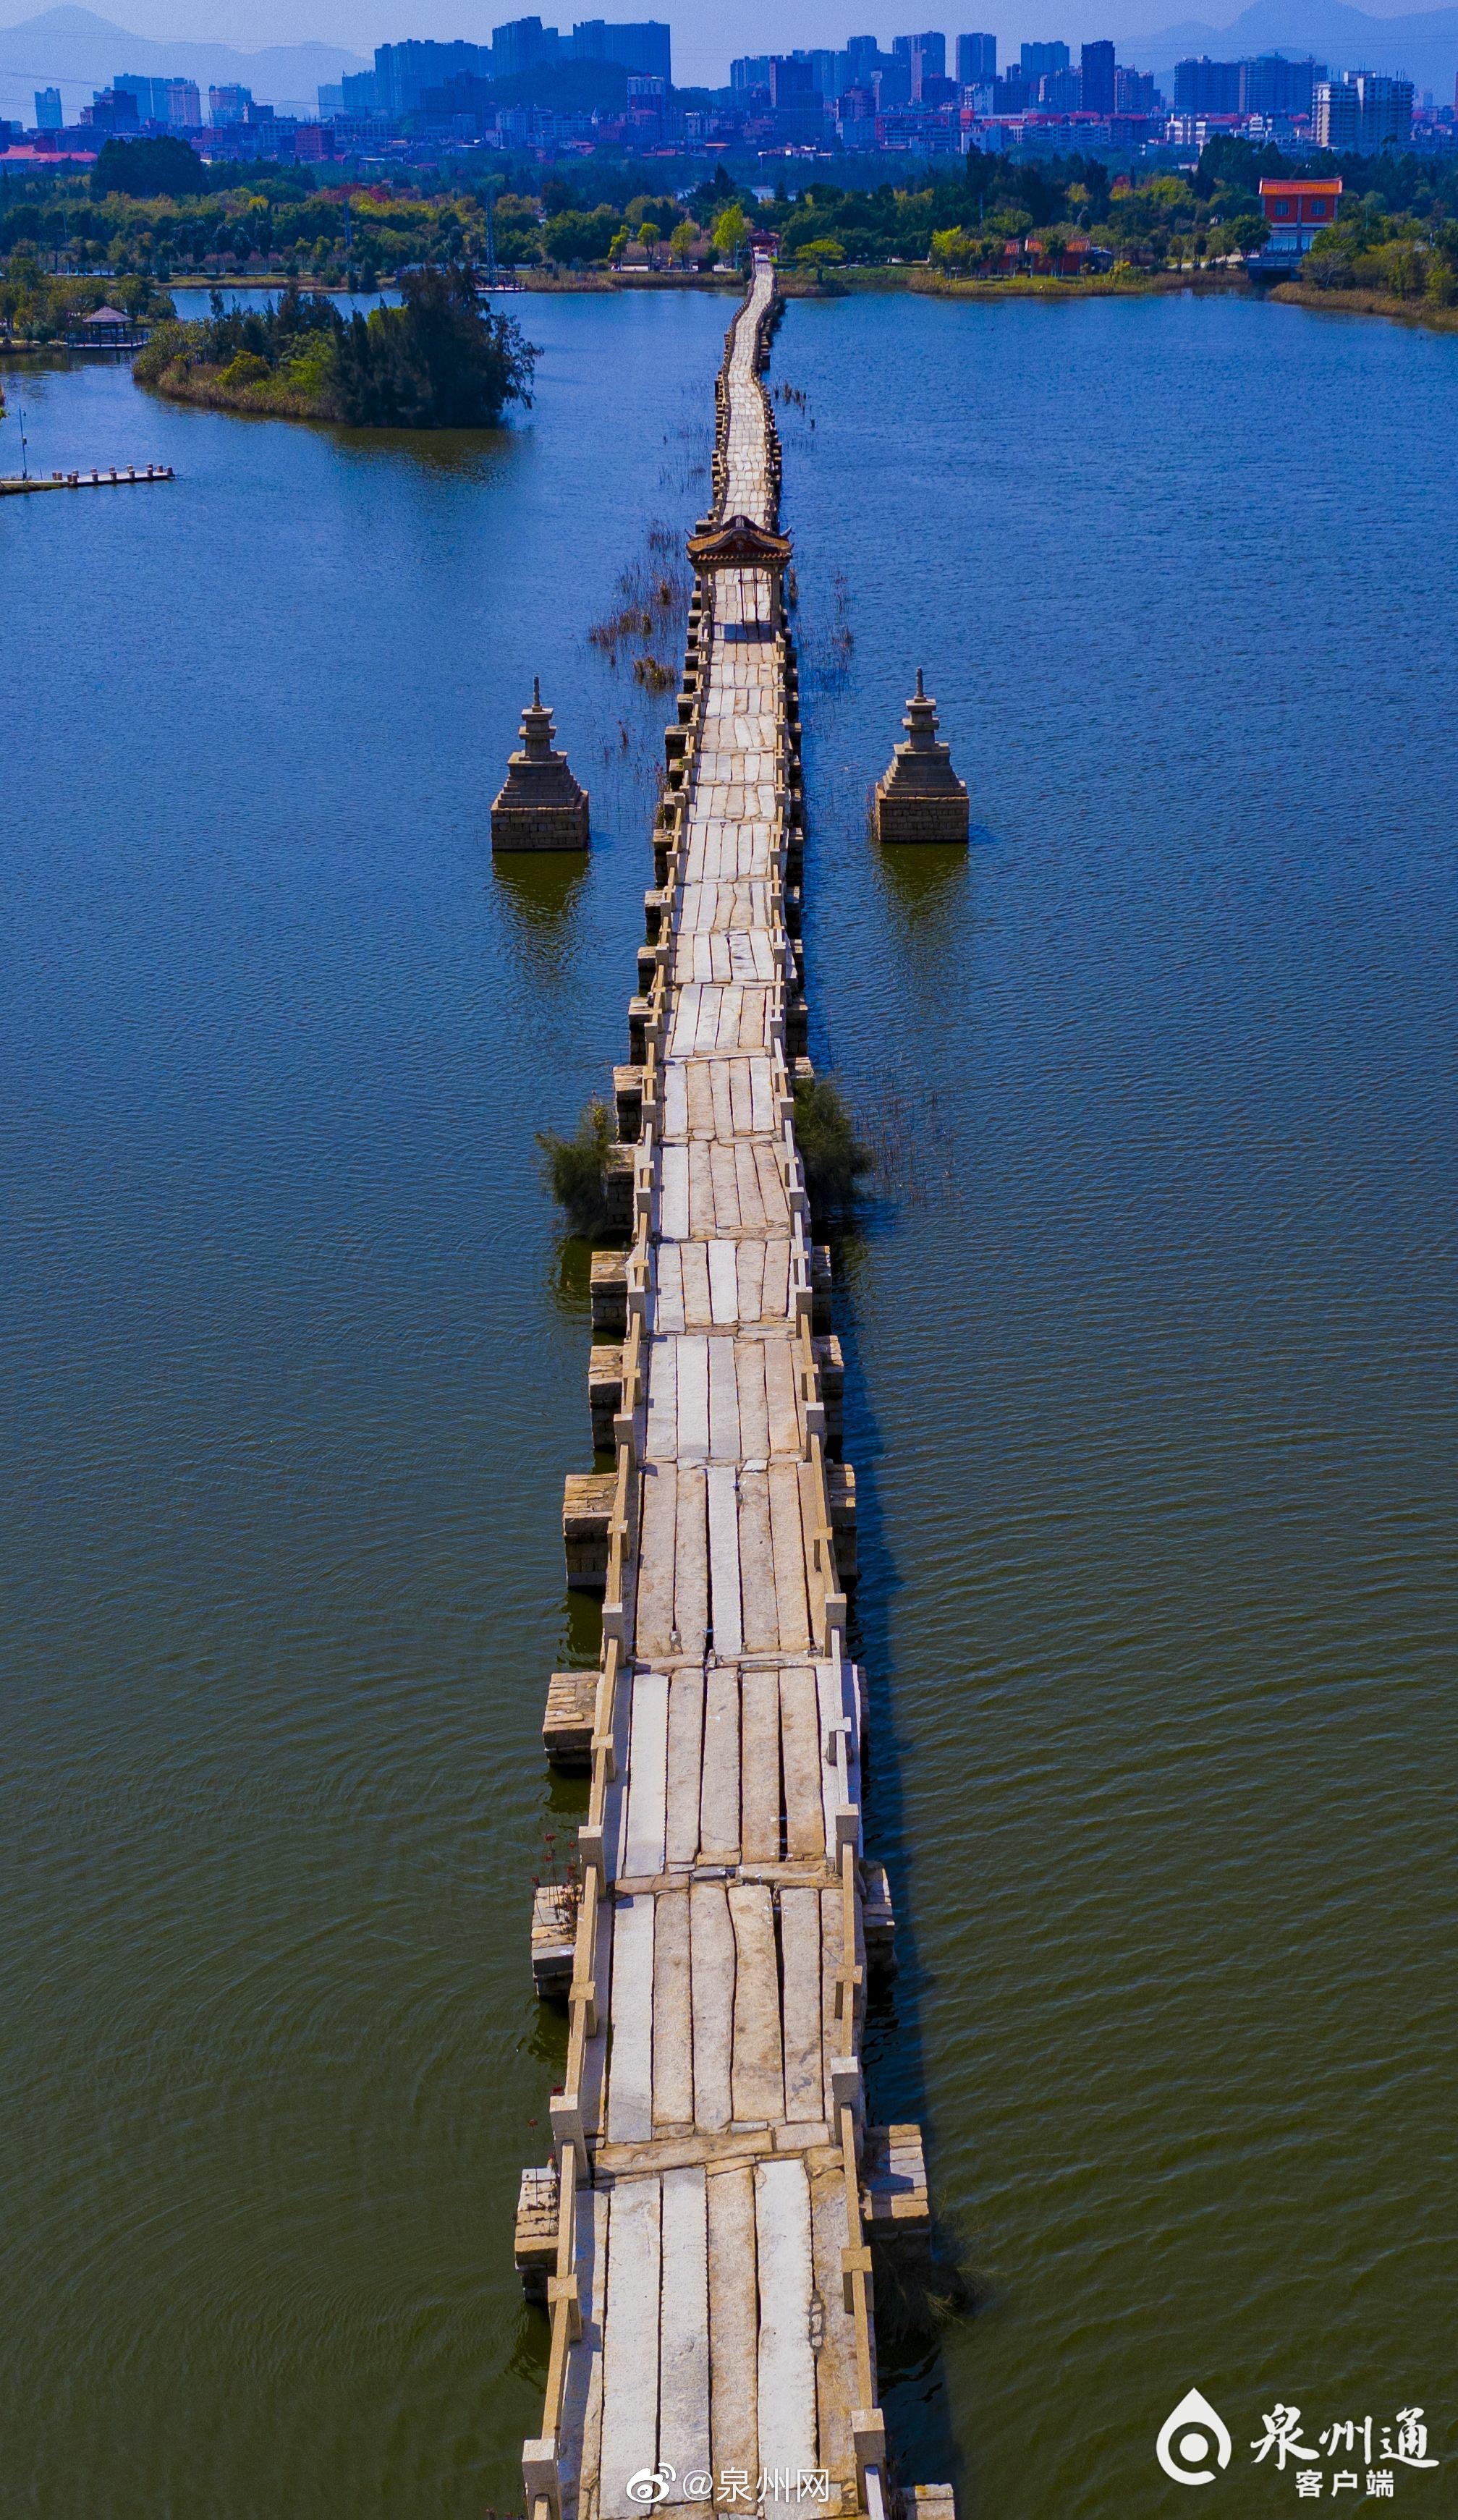 【寻找泉州世遗的中国之最】安平桥:中国现存最长的